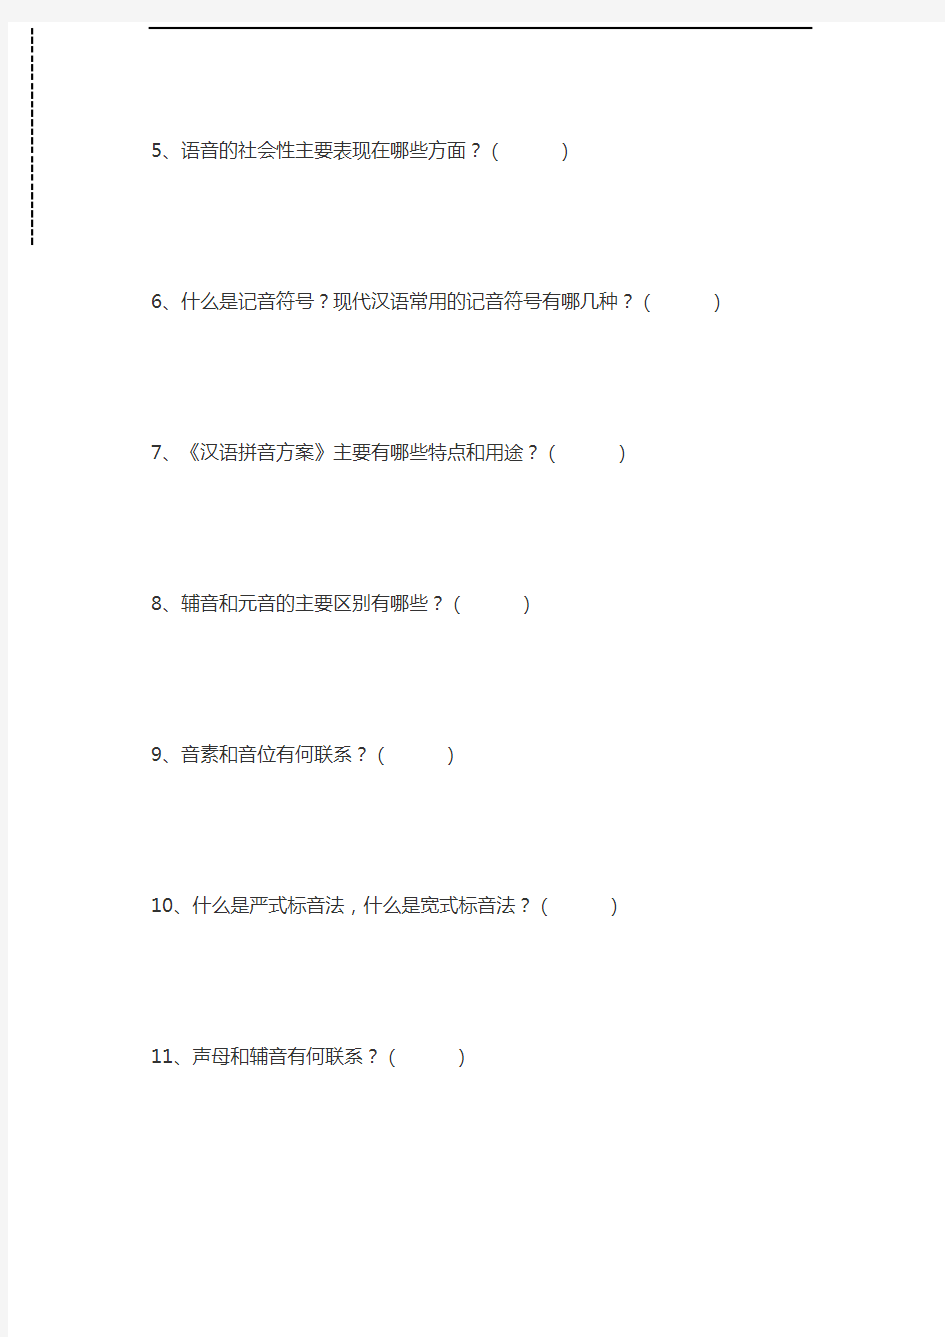 现代汉语现代汉语习题集试题二(第二章 语音)考试卷模拟考试题.docx